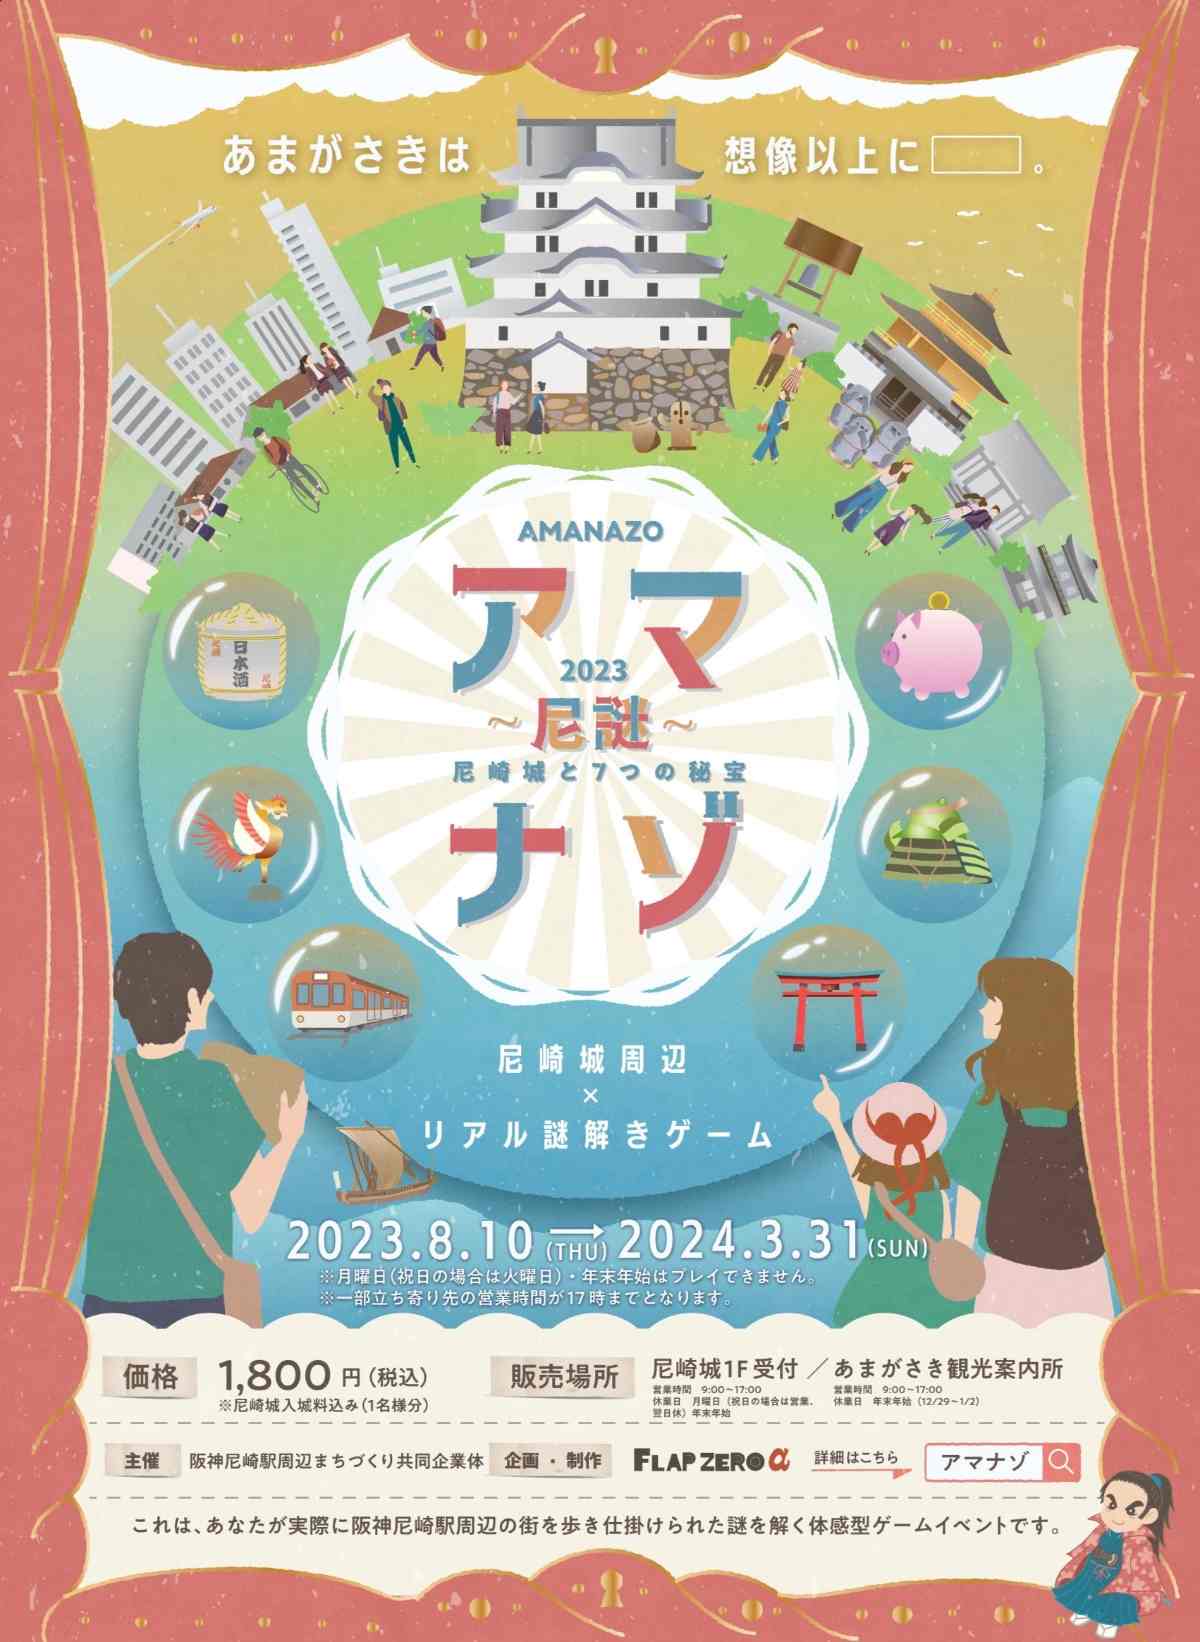 尼崎城で体験型ゲームイベント「アマナゾ ～尼謎～尼崎城と7つの秘宝」開催中 [画像]